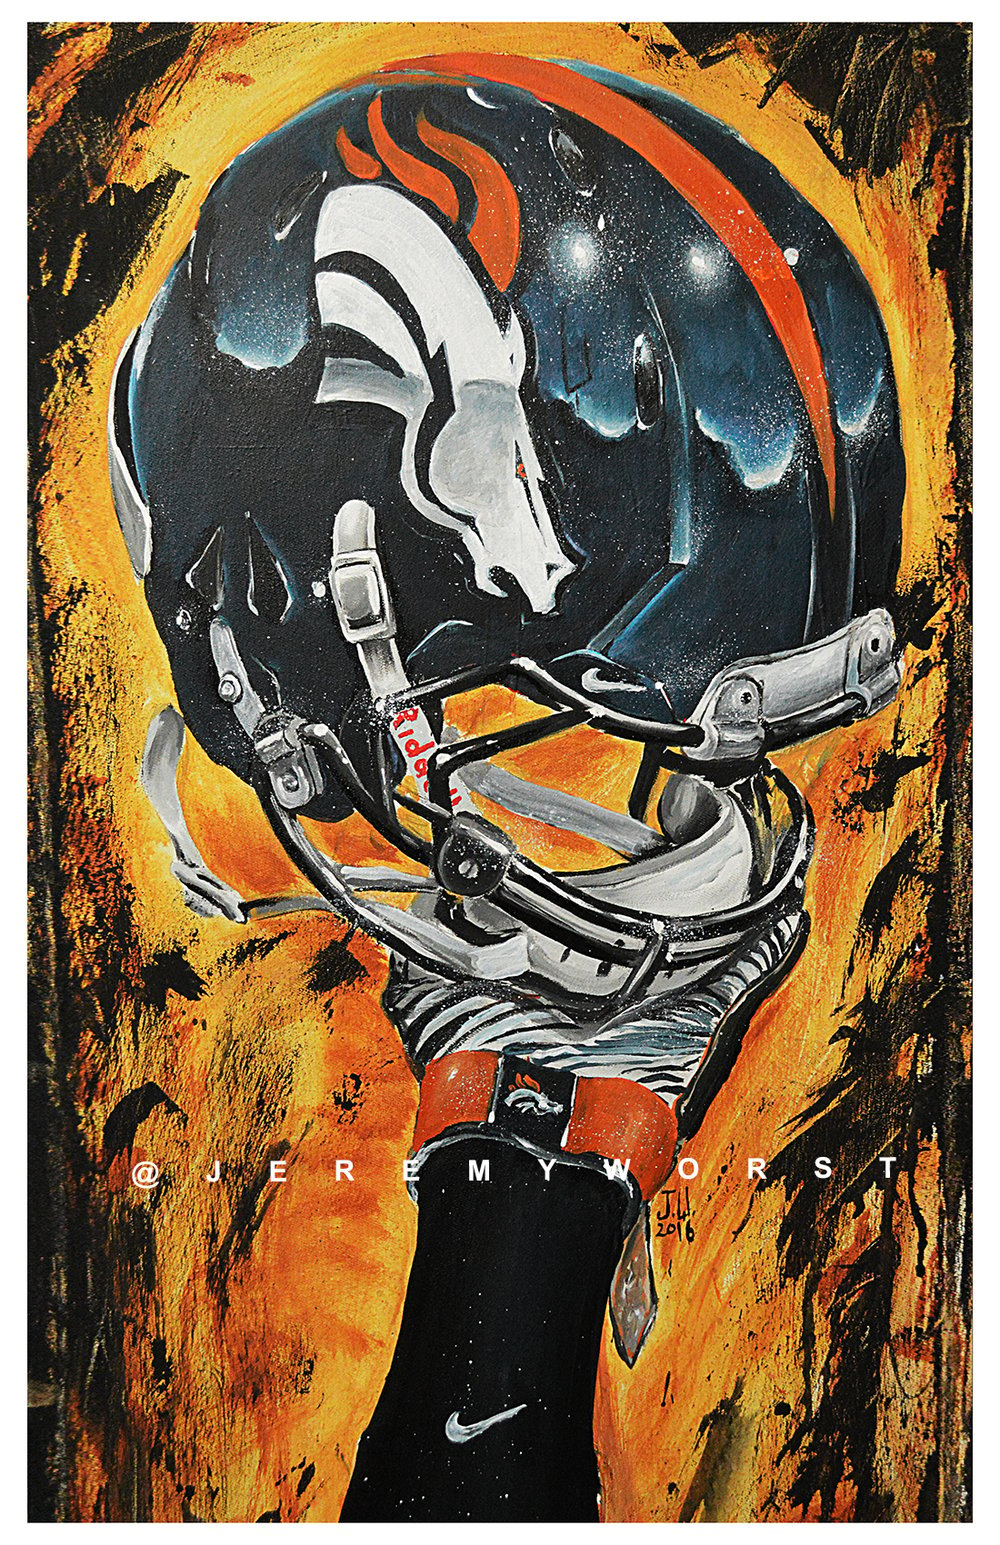 Image of JEREMY WORST Denver Broncos Nation Painting Canvas Print Artwork helmet art 